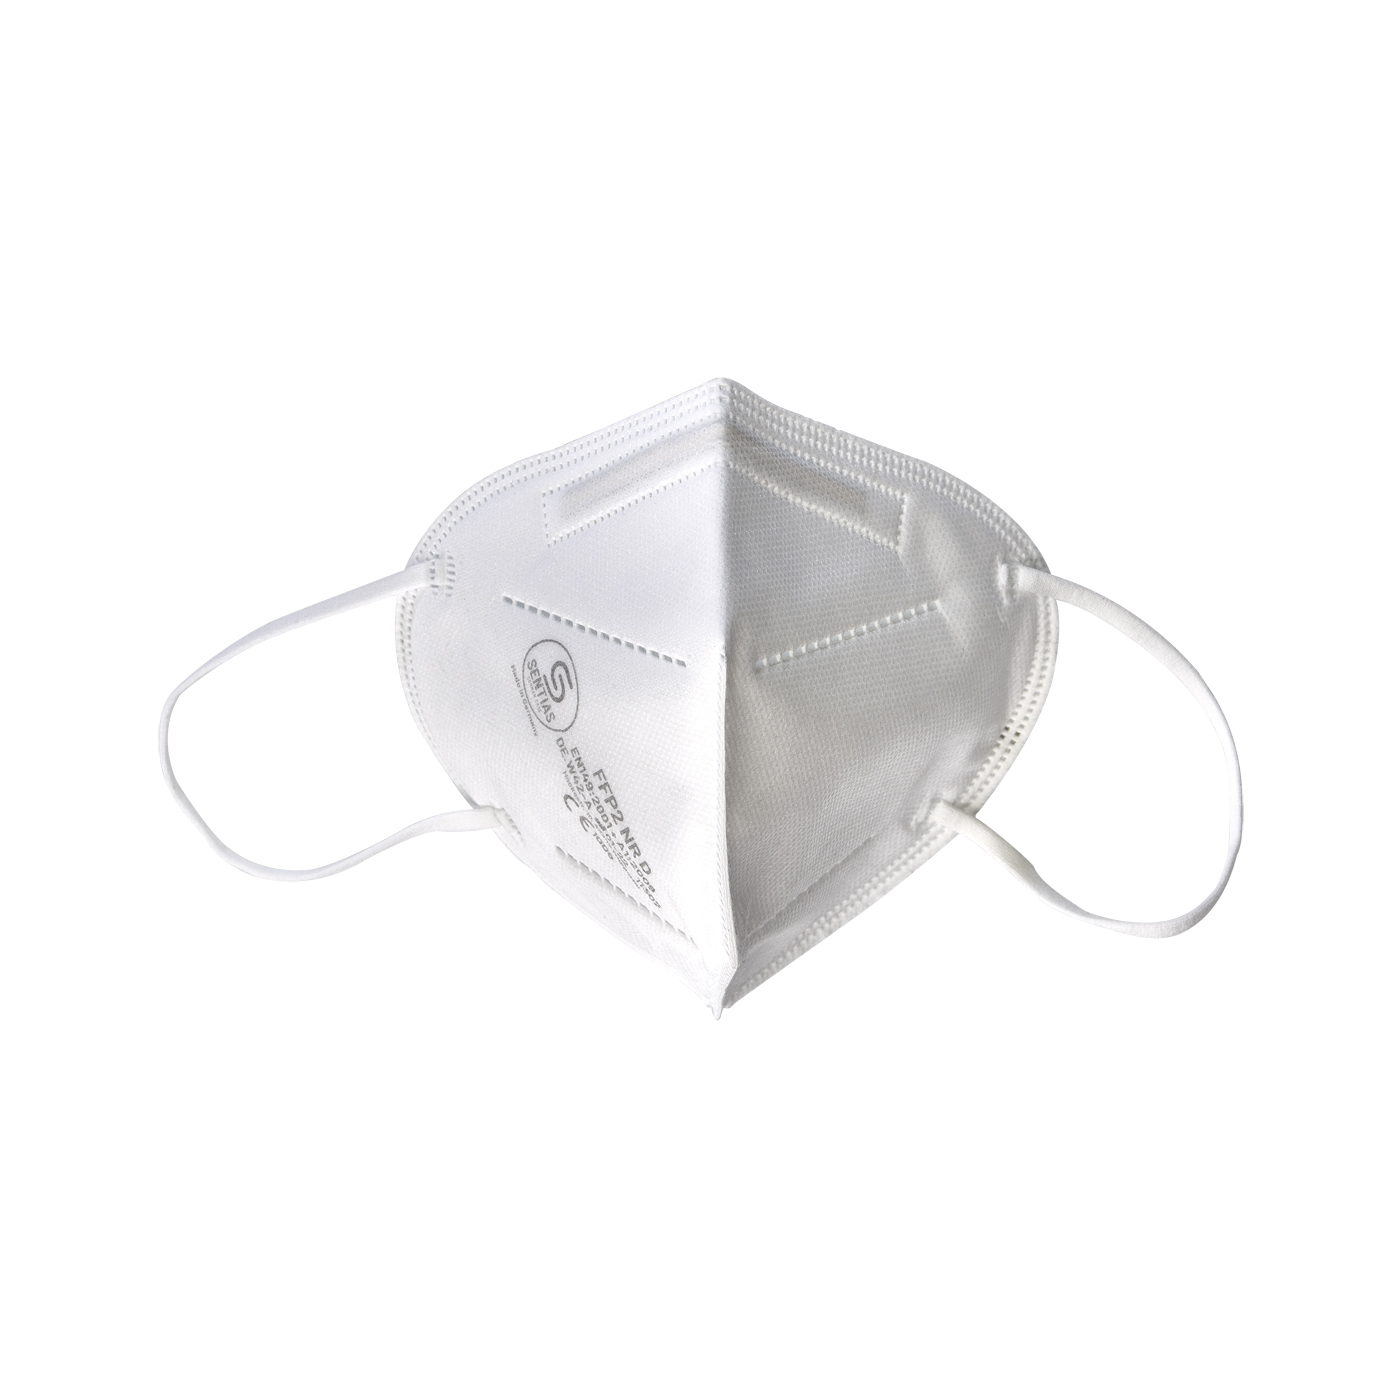 Atemschutzmasken, Schutzklasse FFP2 NR, weiß - 10 Stück